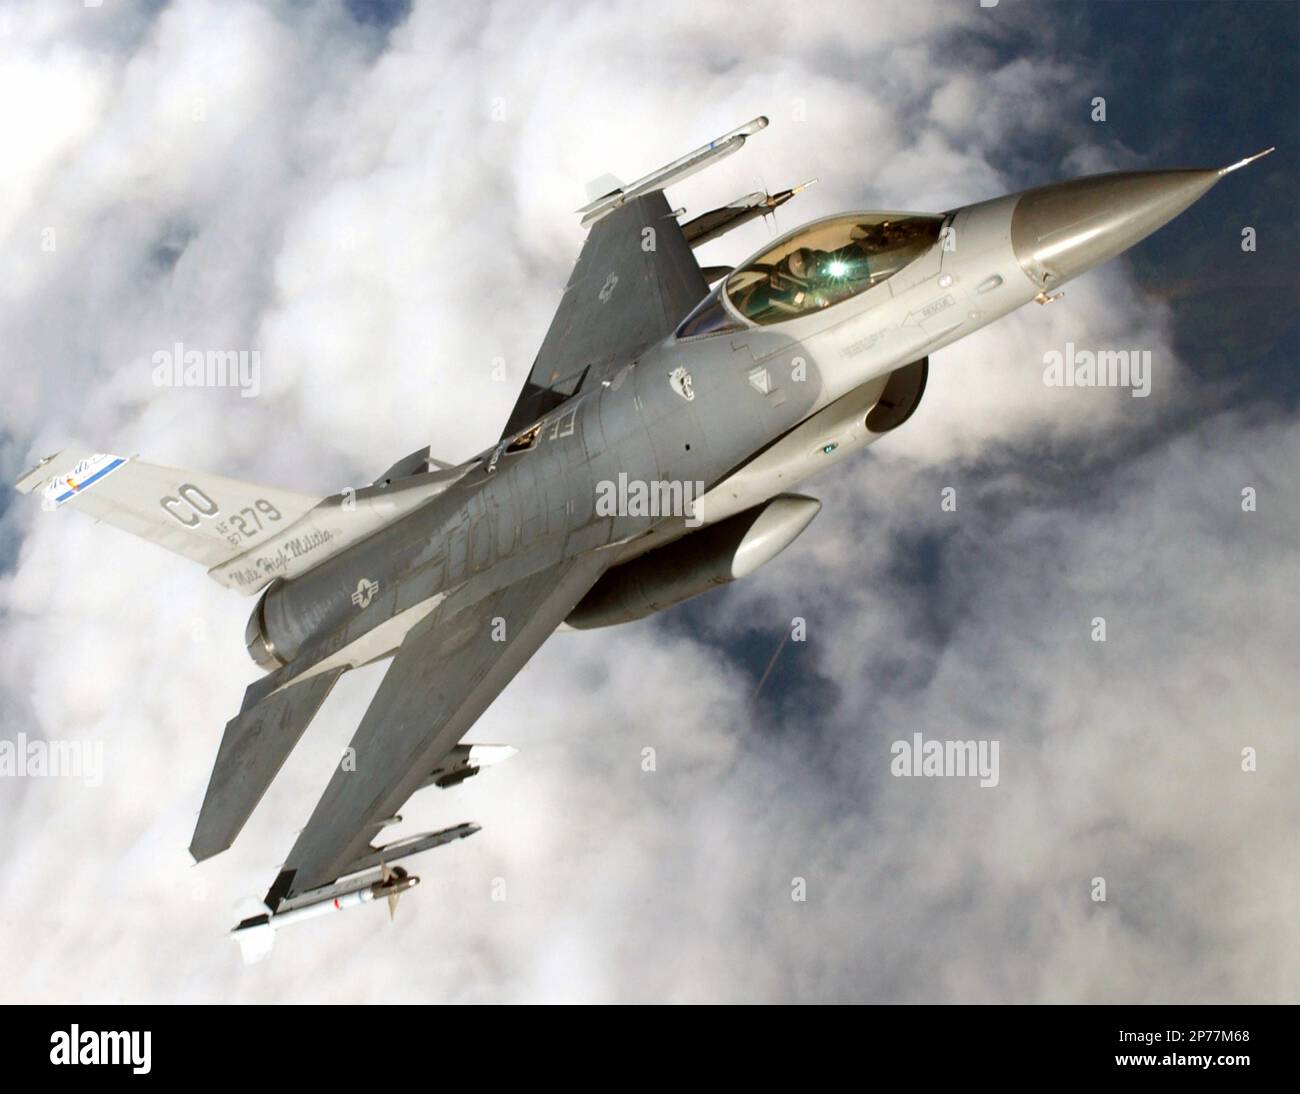 GENERAL DYNAMICS F-16 combattente Falcon multirolo. Un F-16C della Colorado Air National Guard armato di missili AM-9 Sidewinder e di un serbatoio carburante centrale nel settembre 2003. Foto: CANG Foto Stock